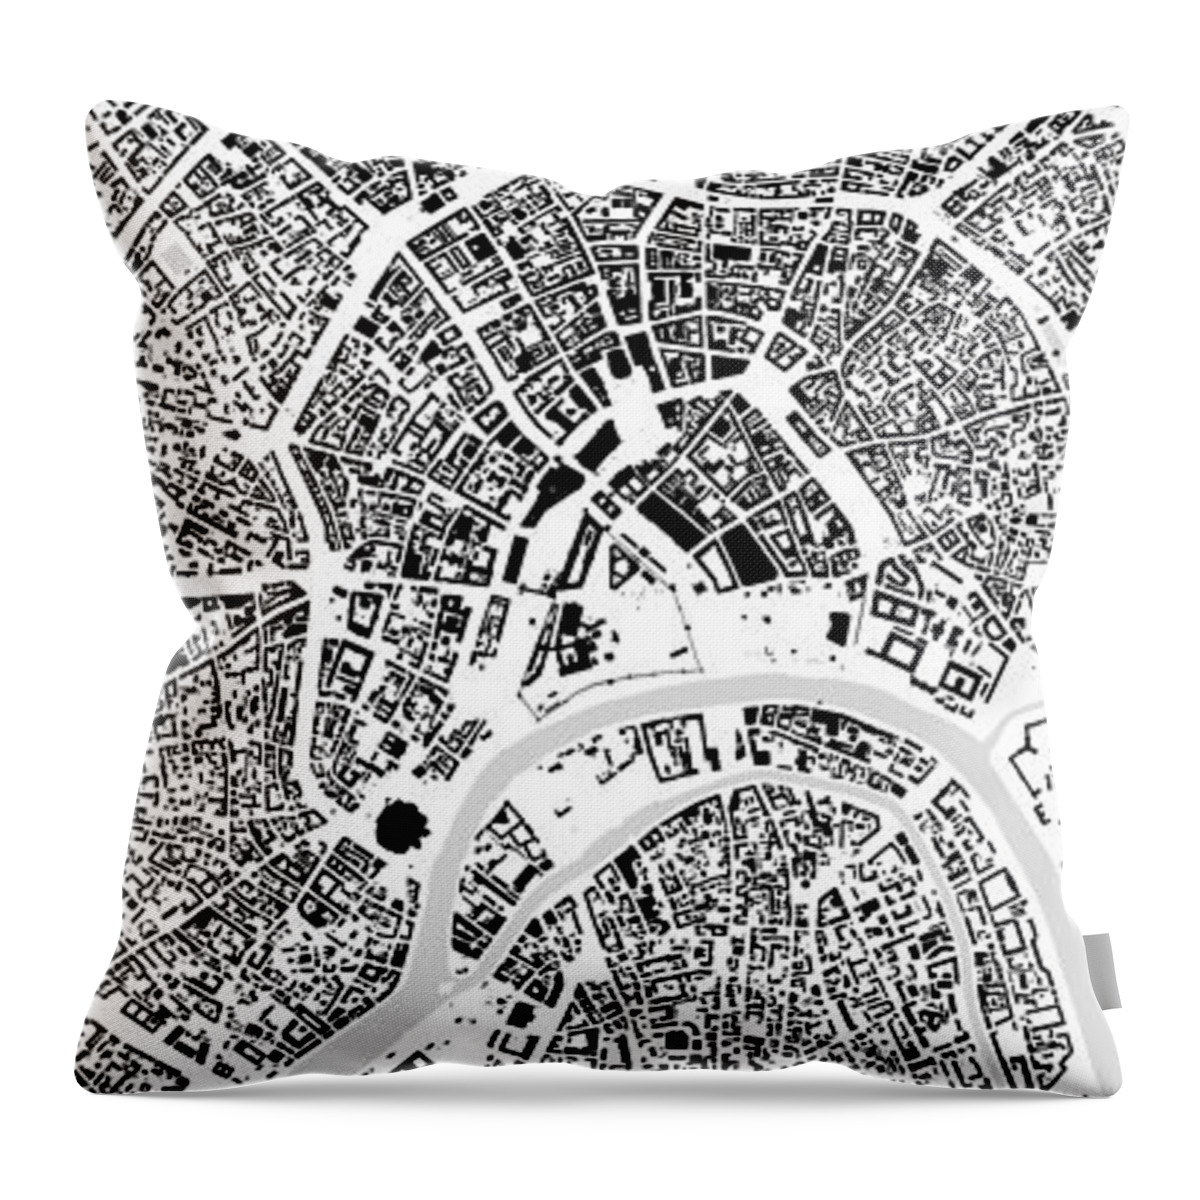 City Throw Pillow featuring the digital art Moscow building map by Christian Pauschert